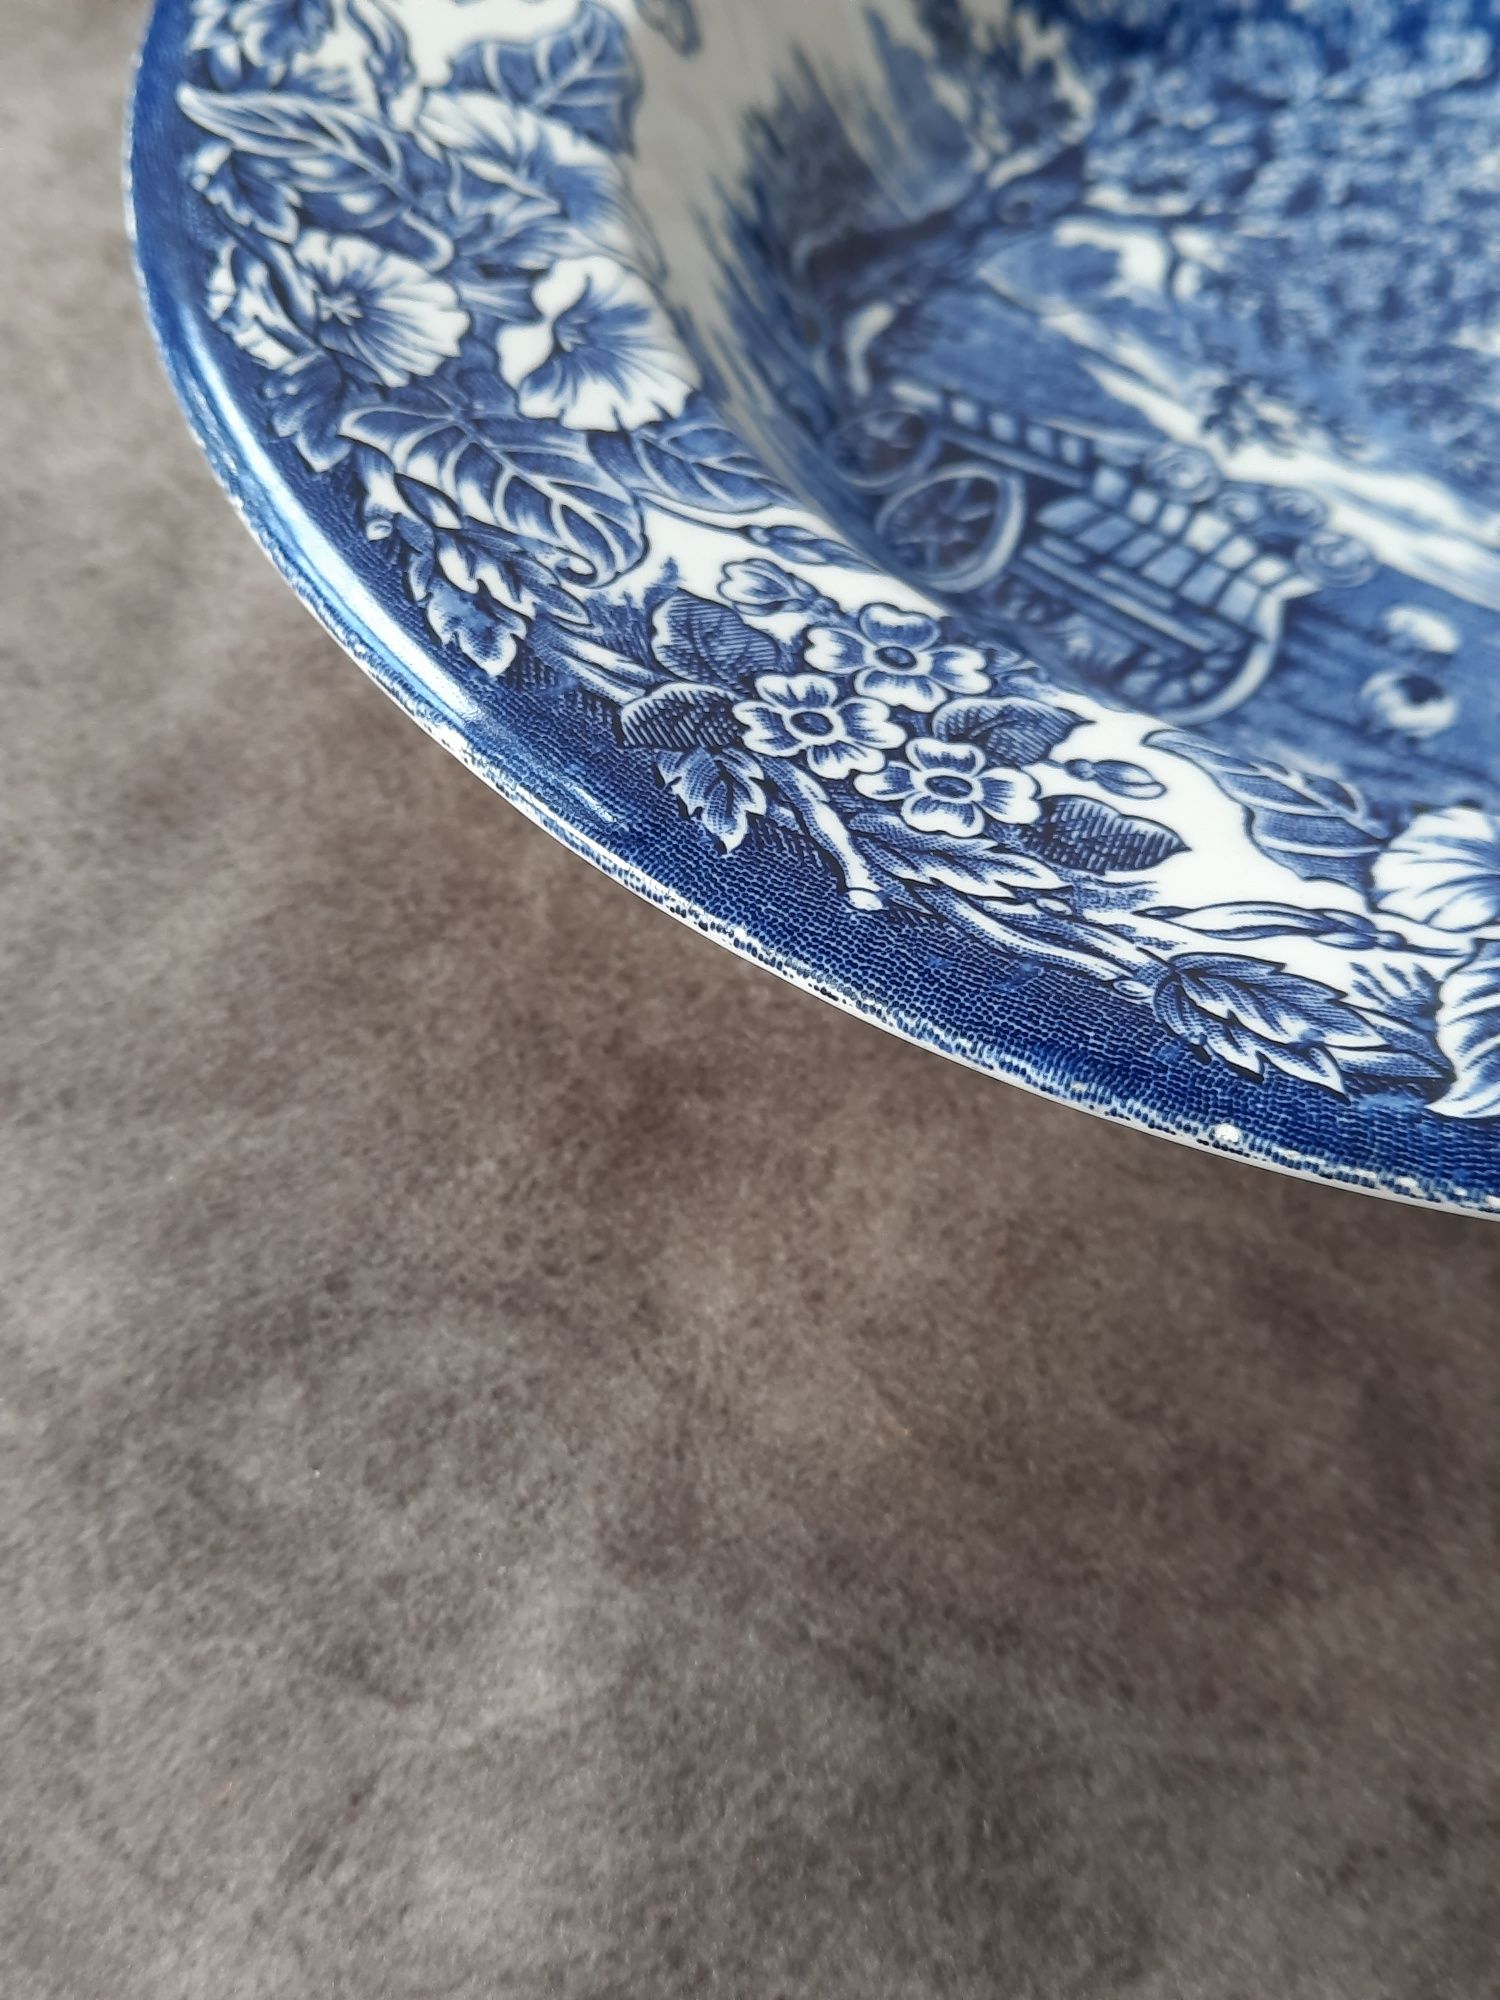 Zestaw talerze głębokie porcelana kobaltowe anglia vintage unikat